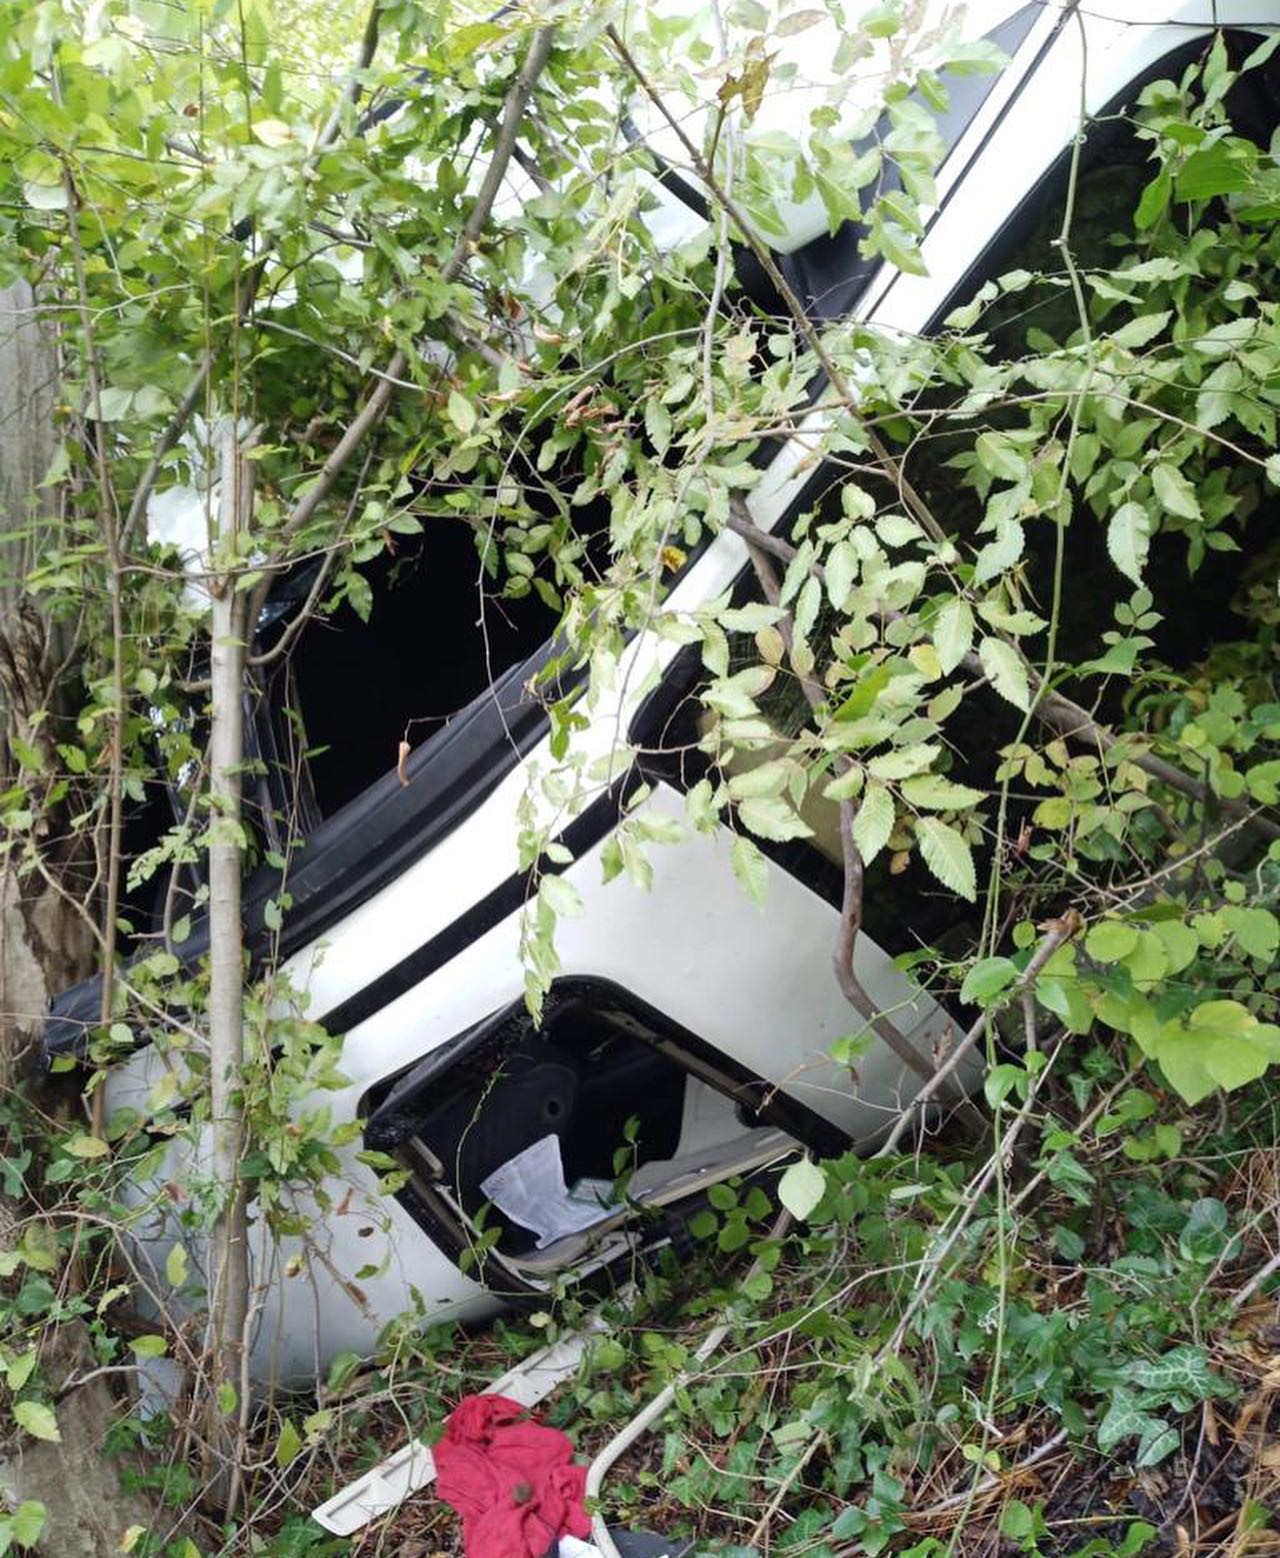 Hatay'ın Erzin ilçesinde meydana gelen trafik kazasında, sürücüsünün direksiyon hakimiyetini kaybettiği bir otomobil Kocadüz Yaylası mevkisinde ormanlık alana düştü.